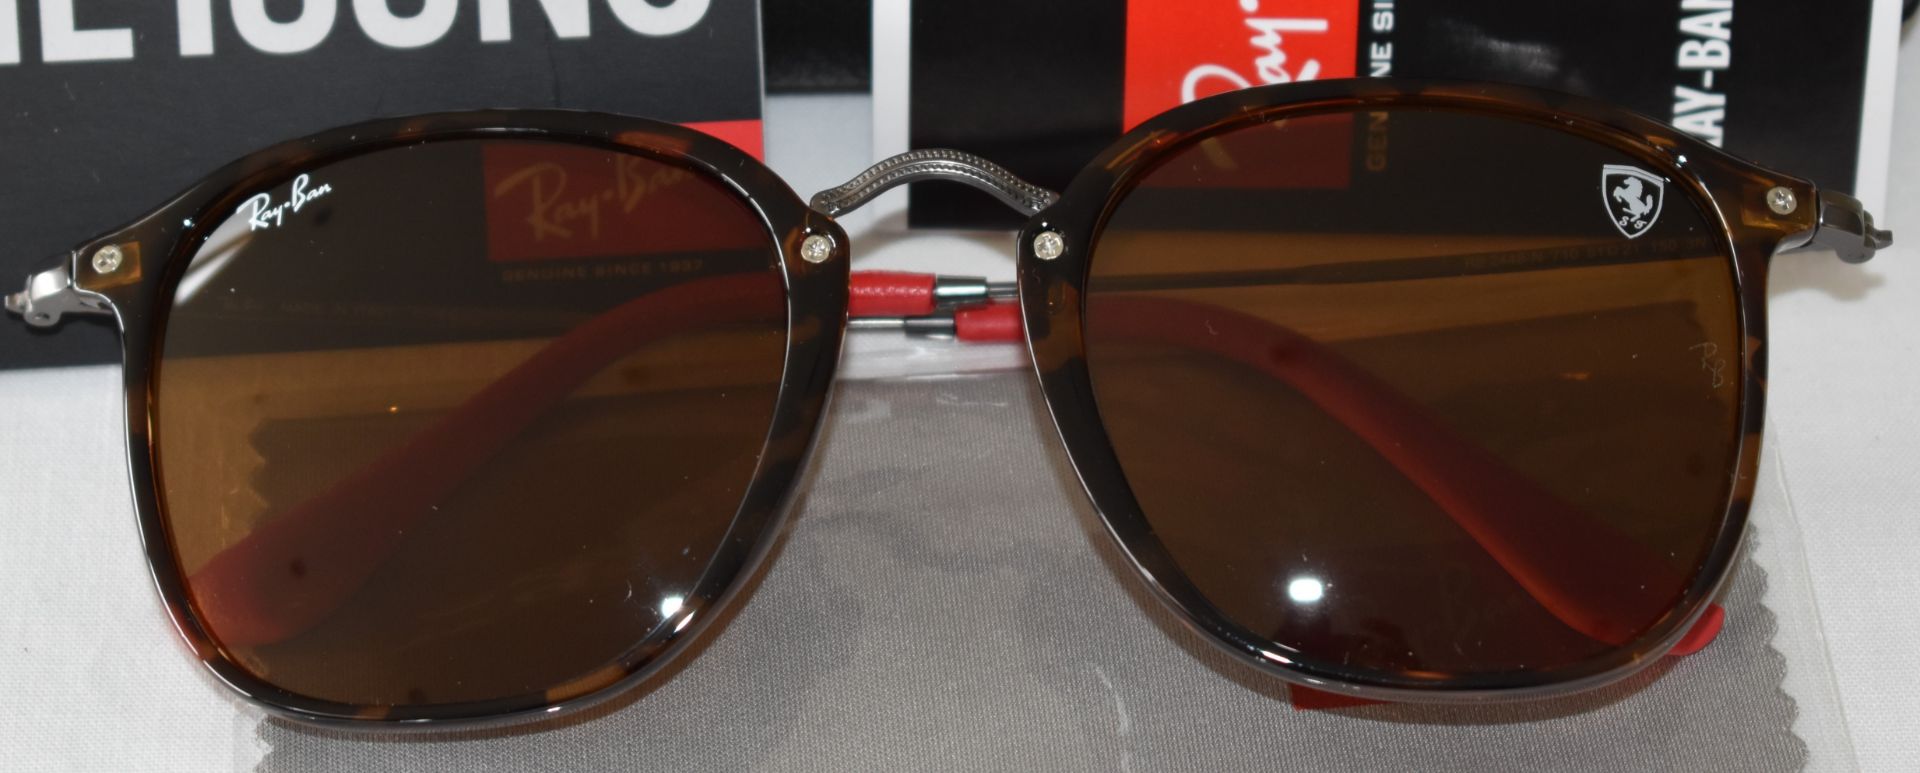 Ray Ban Sunglasses (Ferrari)ORB2448N 710 *3N - Image 2 of 4